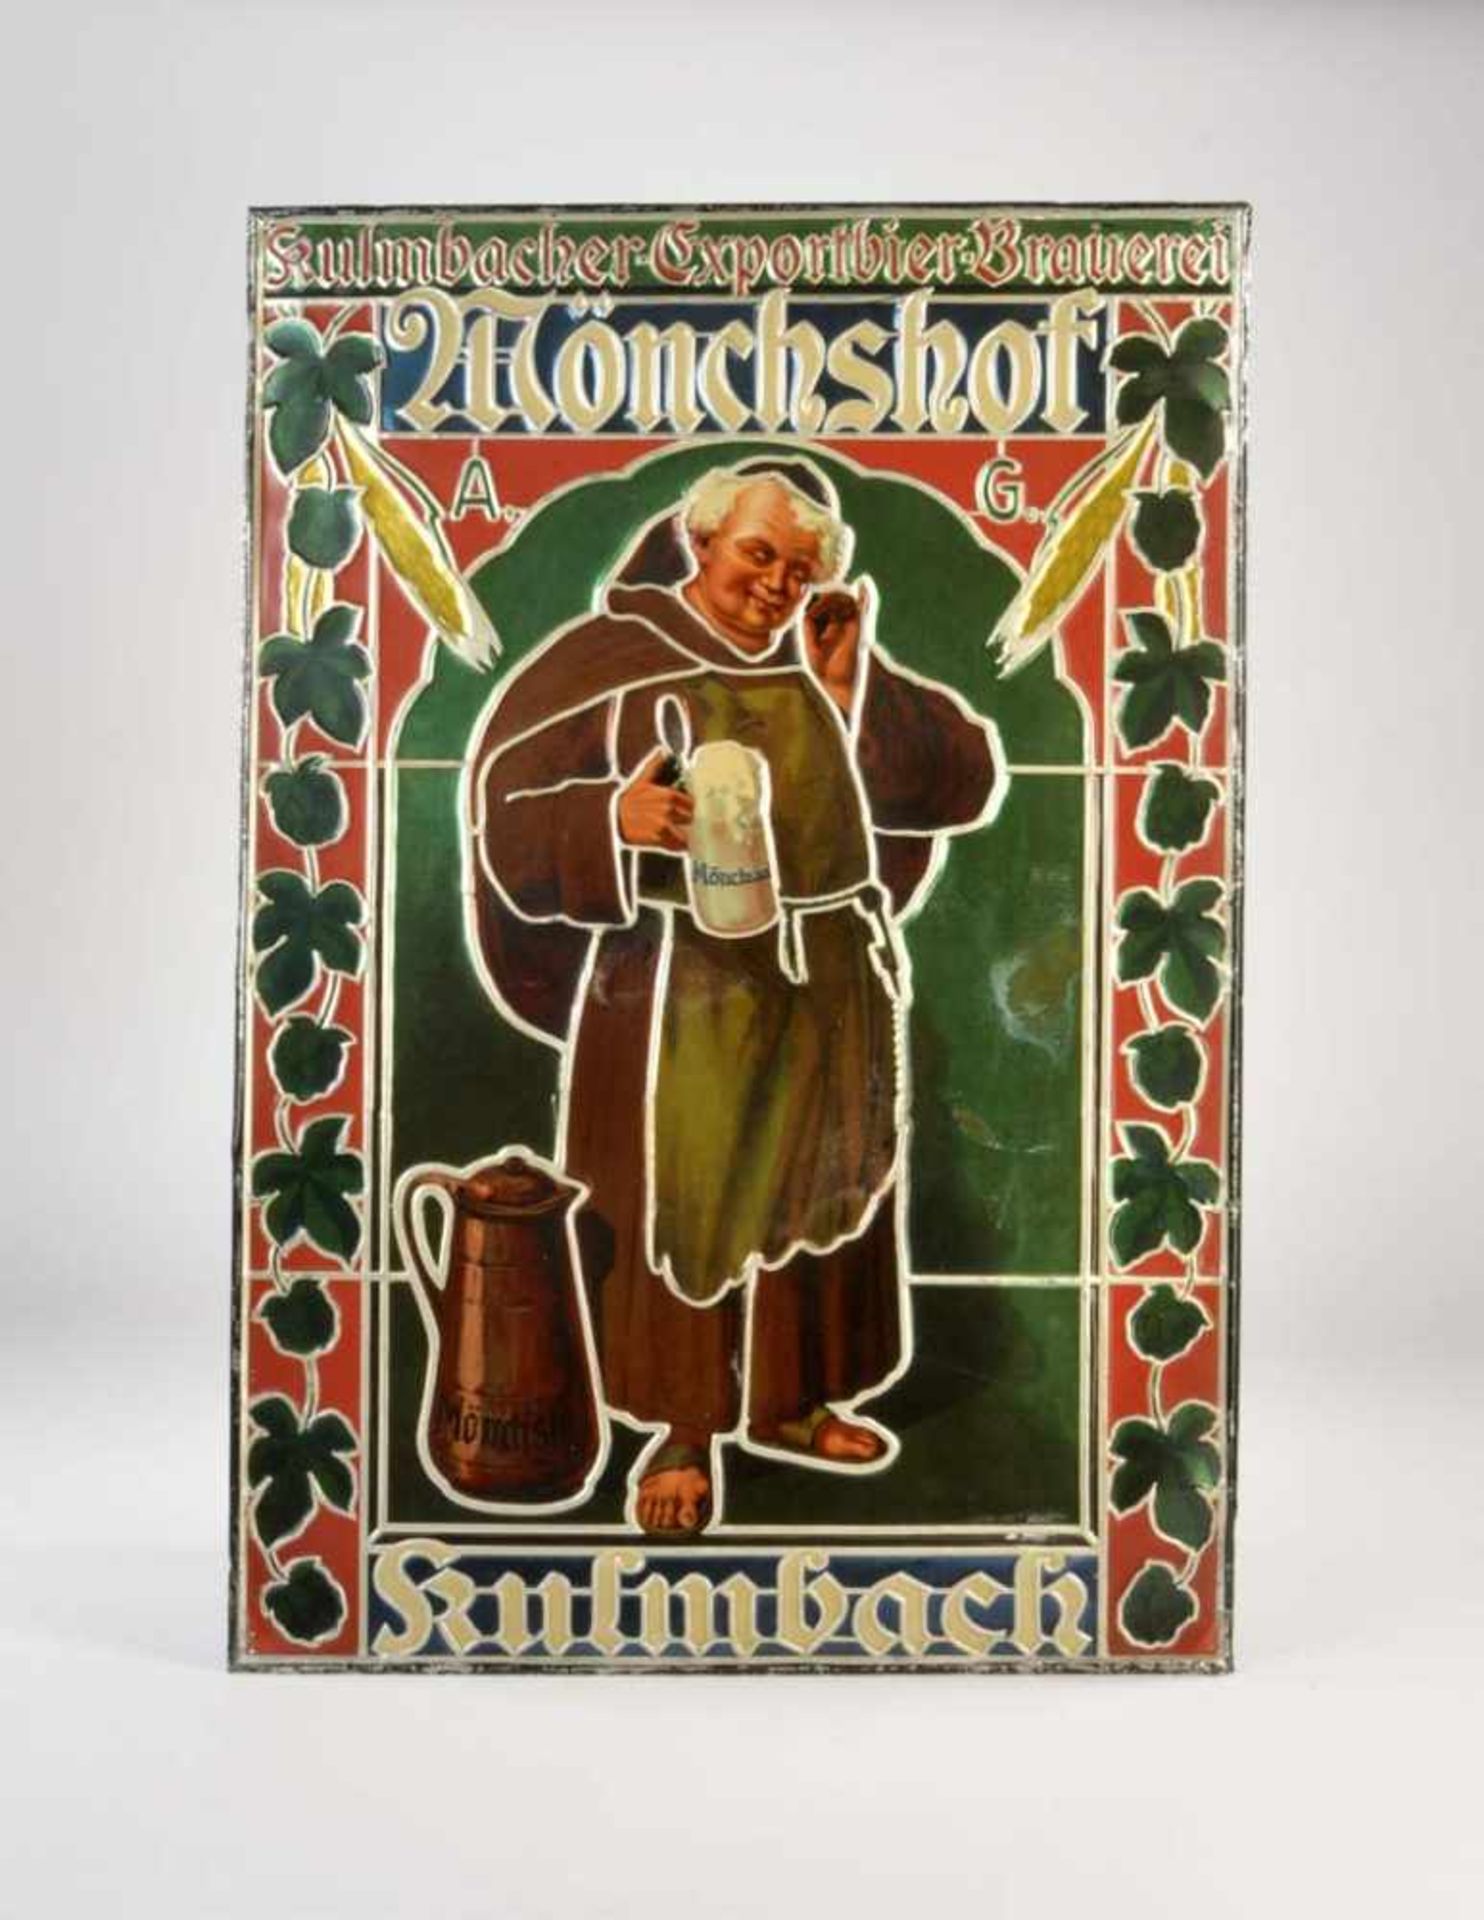 Blechschild "Mönchshof Kulmbach Exportbier Brauerei", 51,5x75,5 cm, min. LM, Z 2Tin Plate Sign "